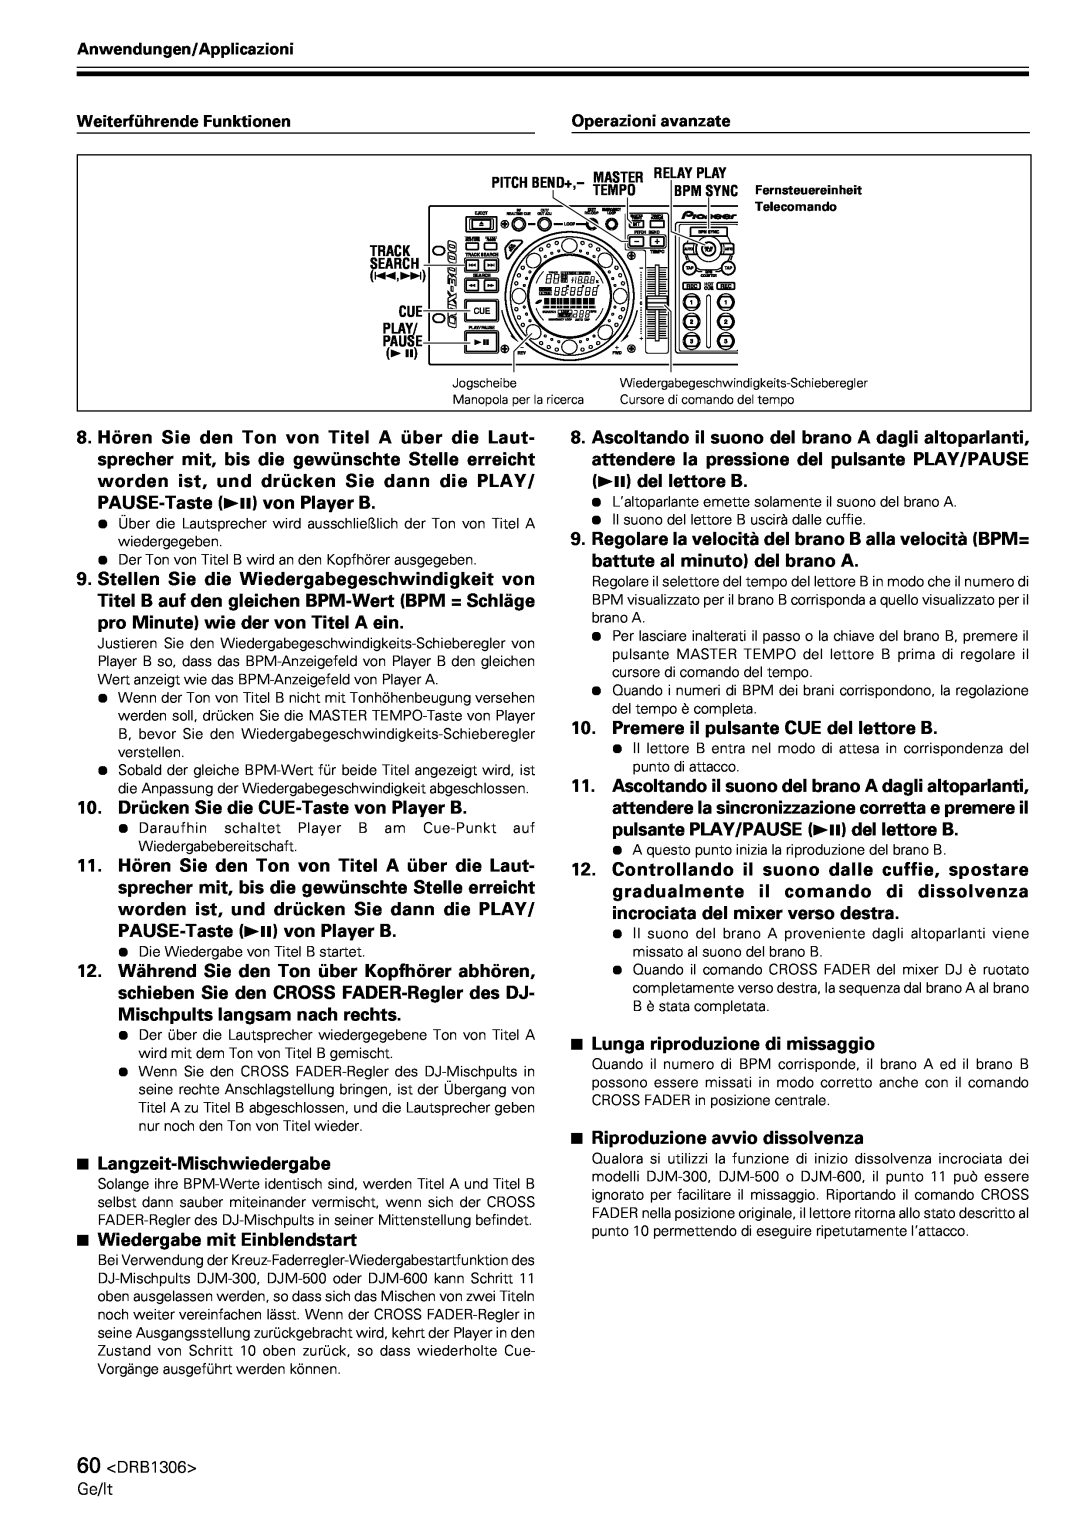 Pioneer CMX-3000 operating instructions 10.Drücken Sie die CUE-Tastevon Player B 